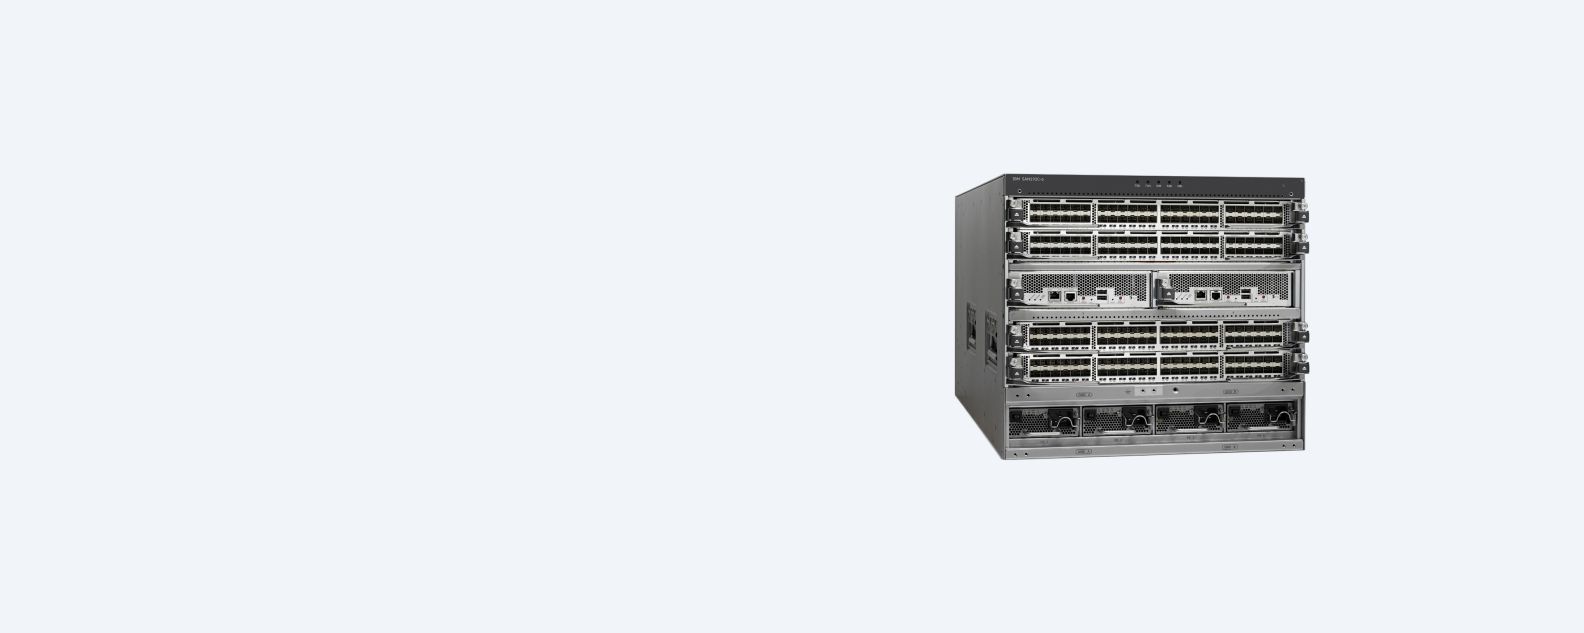 Produktfoto des IBM Storage Networking SAN192C-6 Director Class SAN Switch